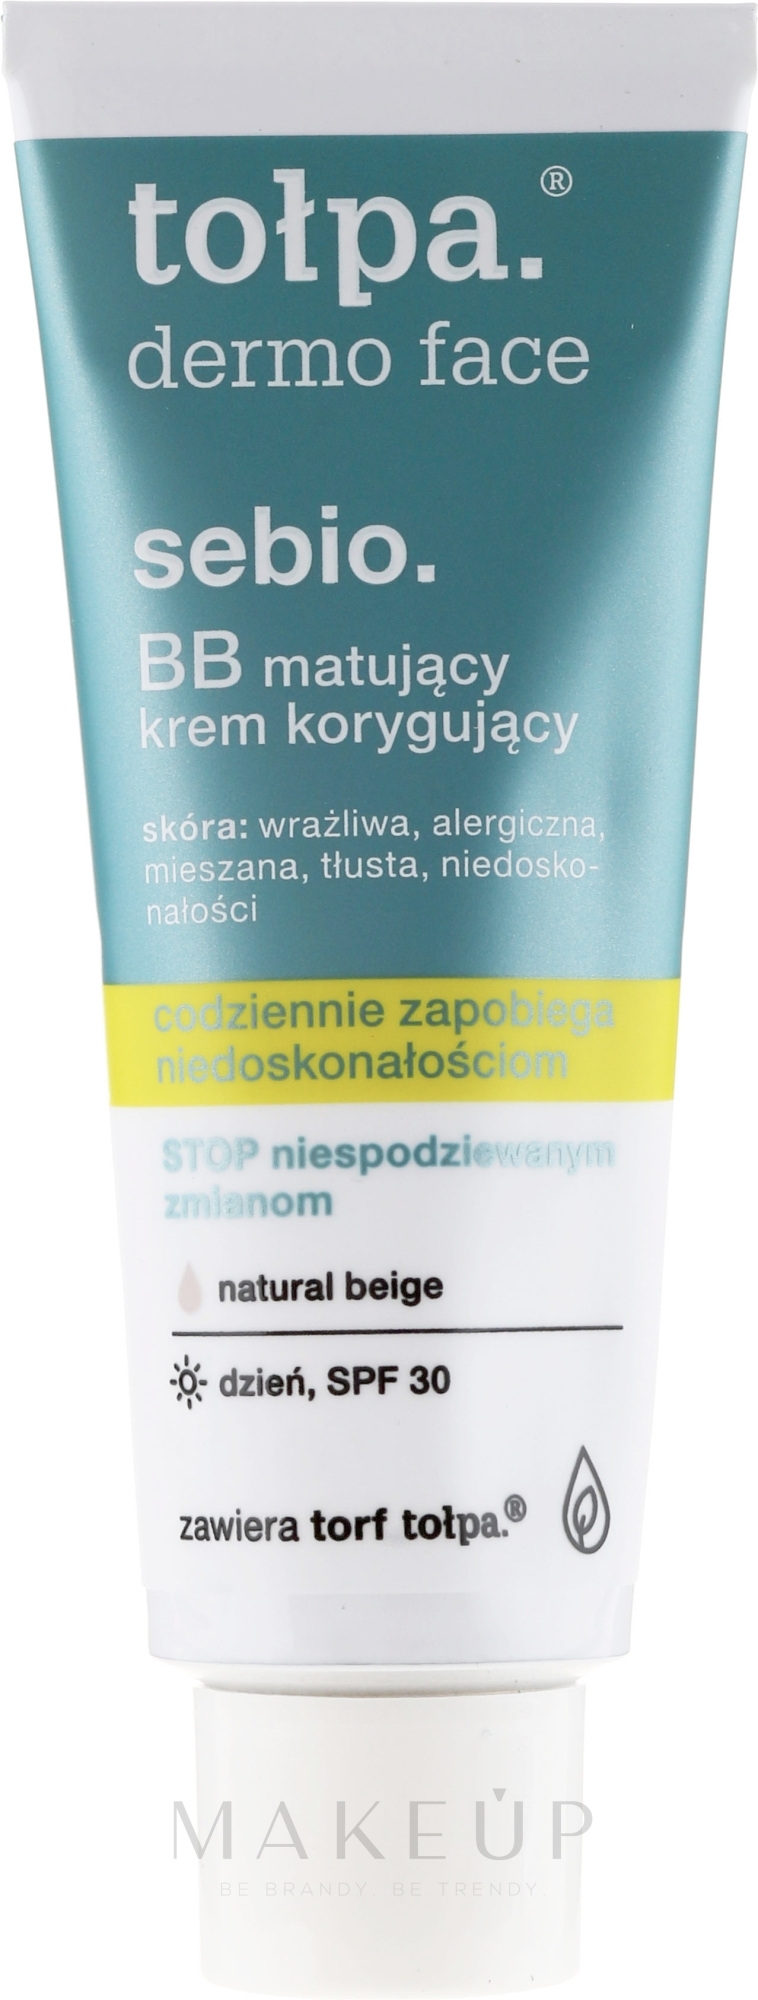 Mattierende BB Creme - Tolpa Dermo Face Sebio. BB Cream — Foto Natural Beige